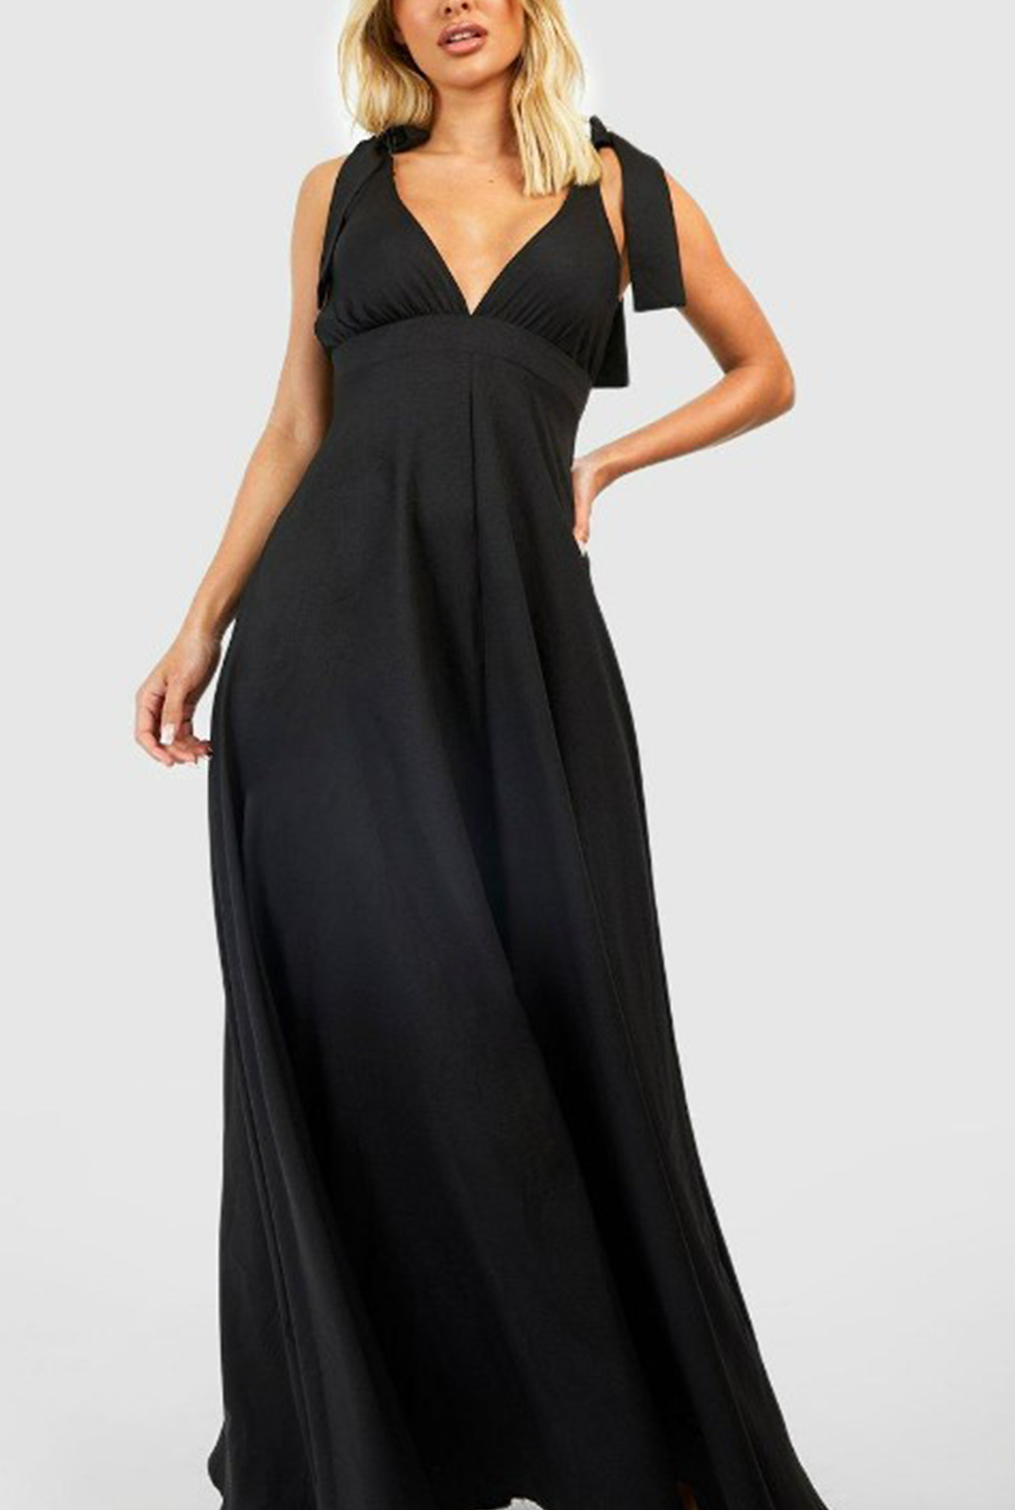 Whimsy Black Dress